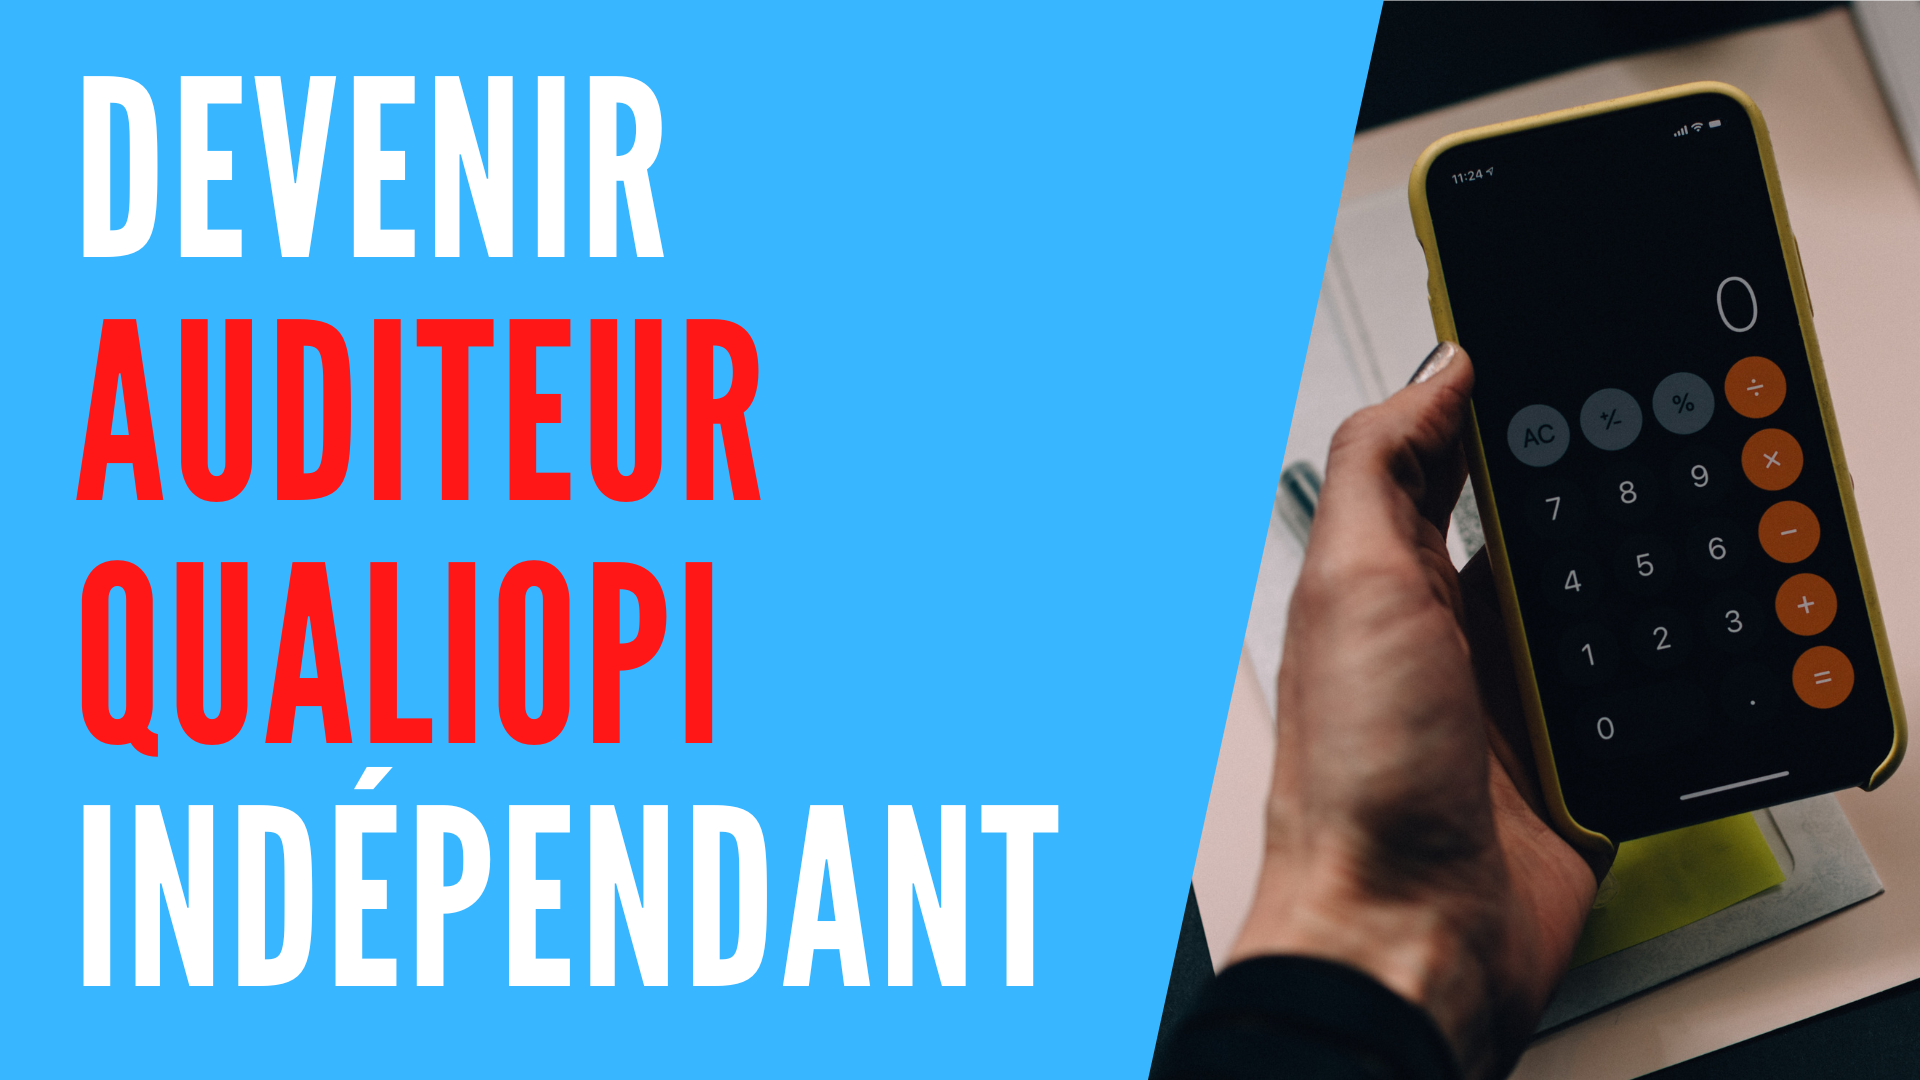 You are currently viewing Devenir auditeur Qualiopi indépendant